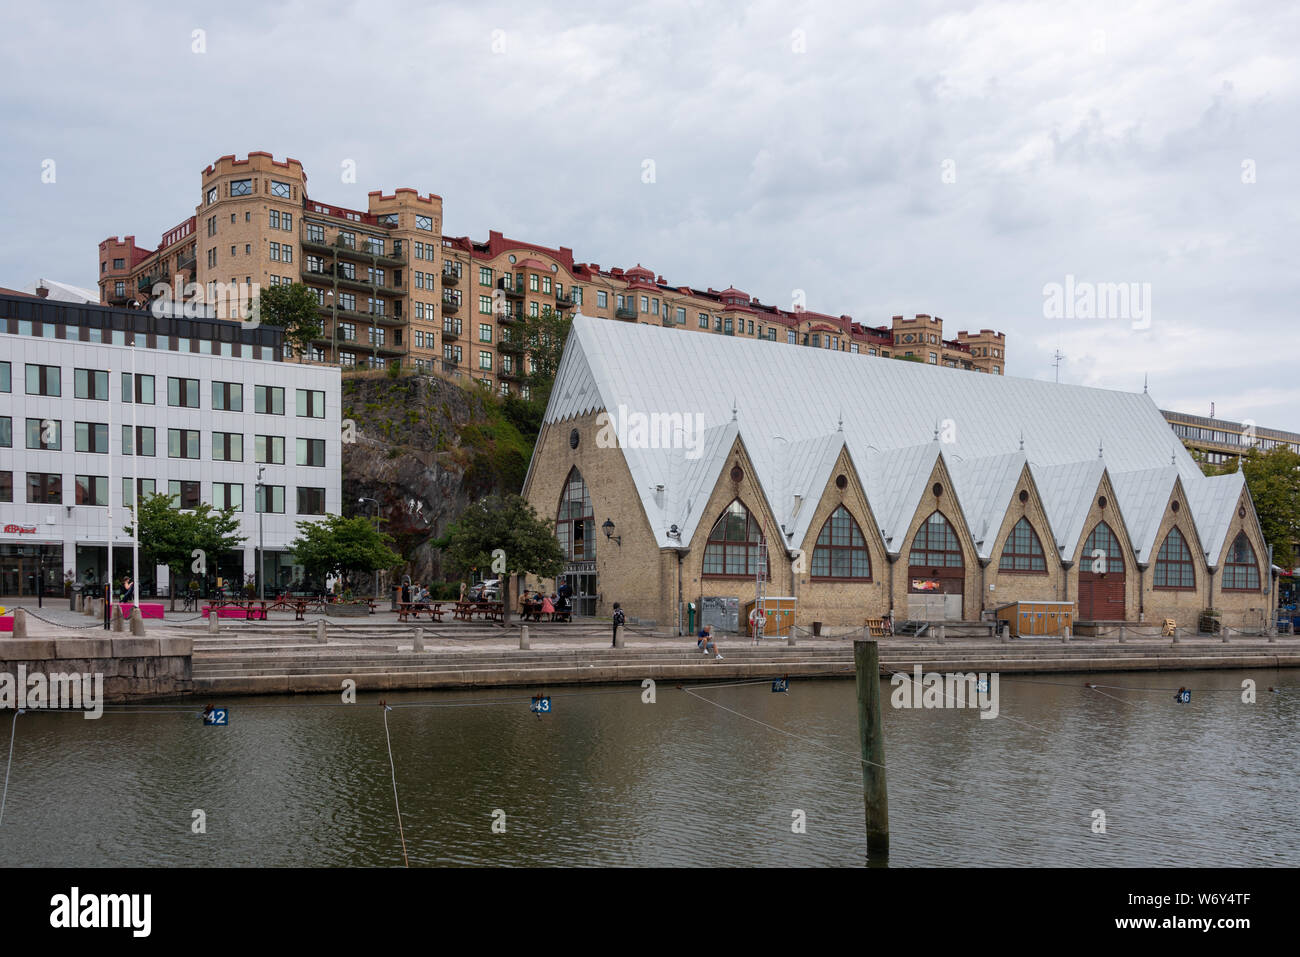 Göteborg, Schweden - 19 Juli, 2019: Blick auf die Kirche des Ffishermen in Göteborg. Feskekôrka, wie es in den Schwedischen genannt, ist ein Fisch Markt wh Stockfoto